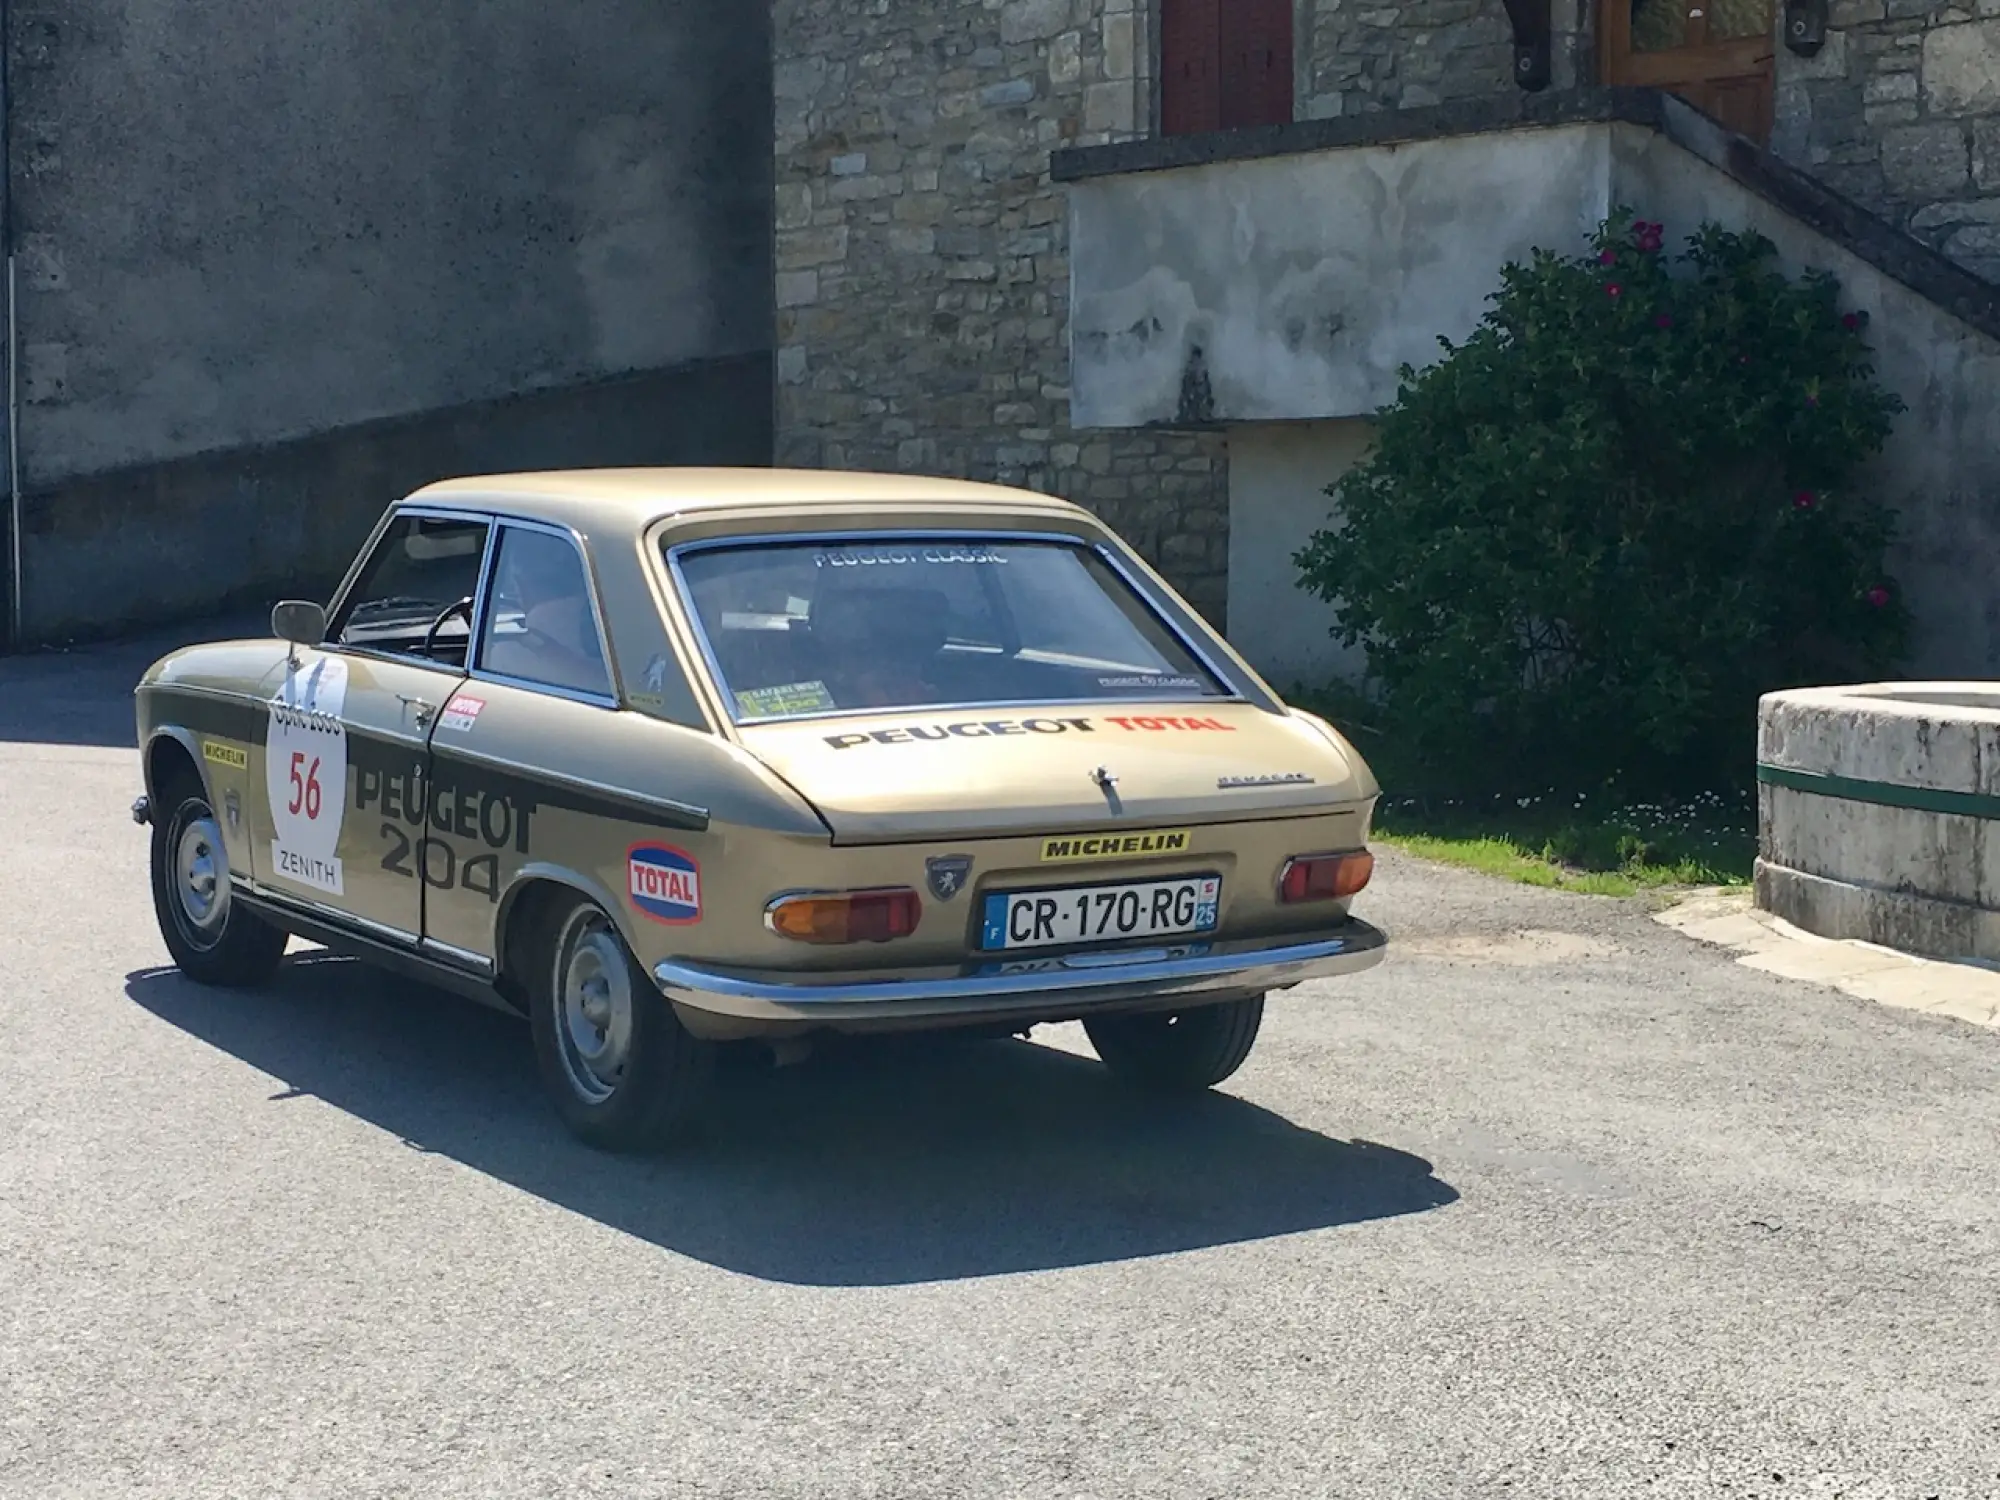 Peugeot Spirit of France - 69